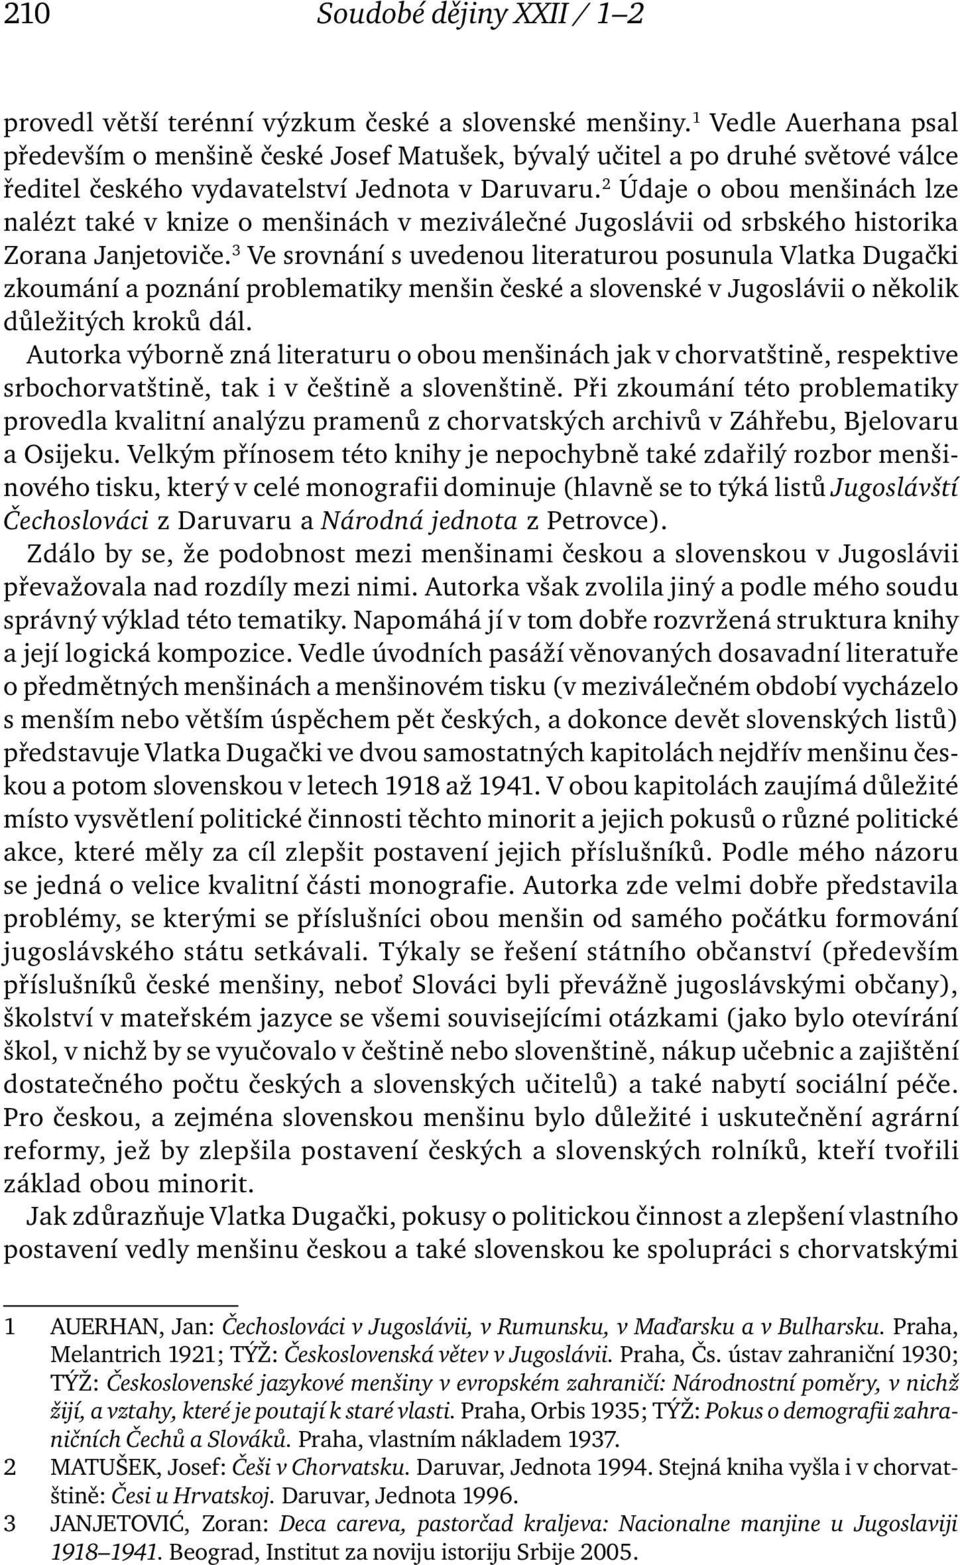 2 Údaje o obou menšinách lze nalézt také v knize o menšinách v meziválečné Jugoslávii od srbského historika Zorana Janjetoviče.